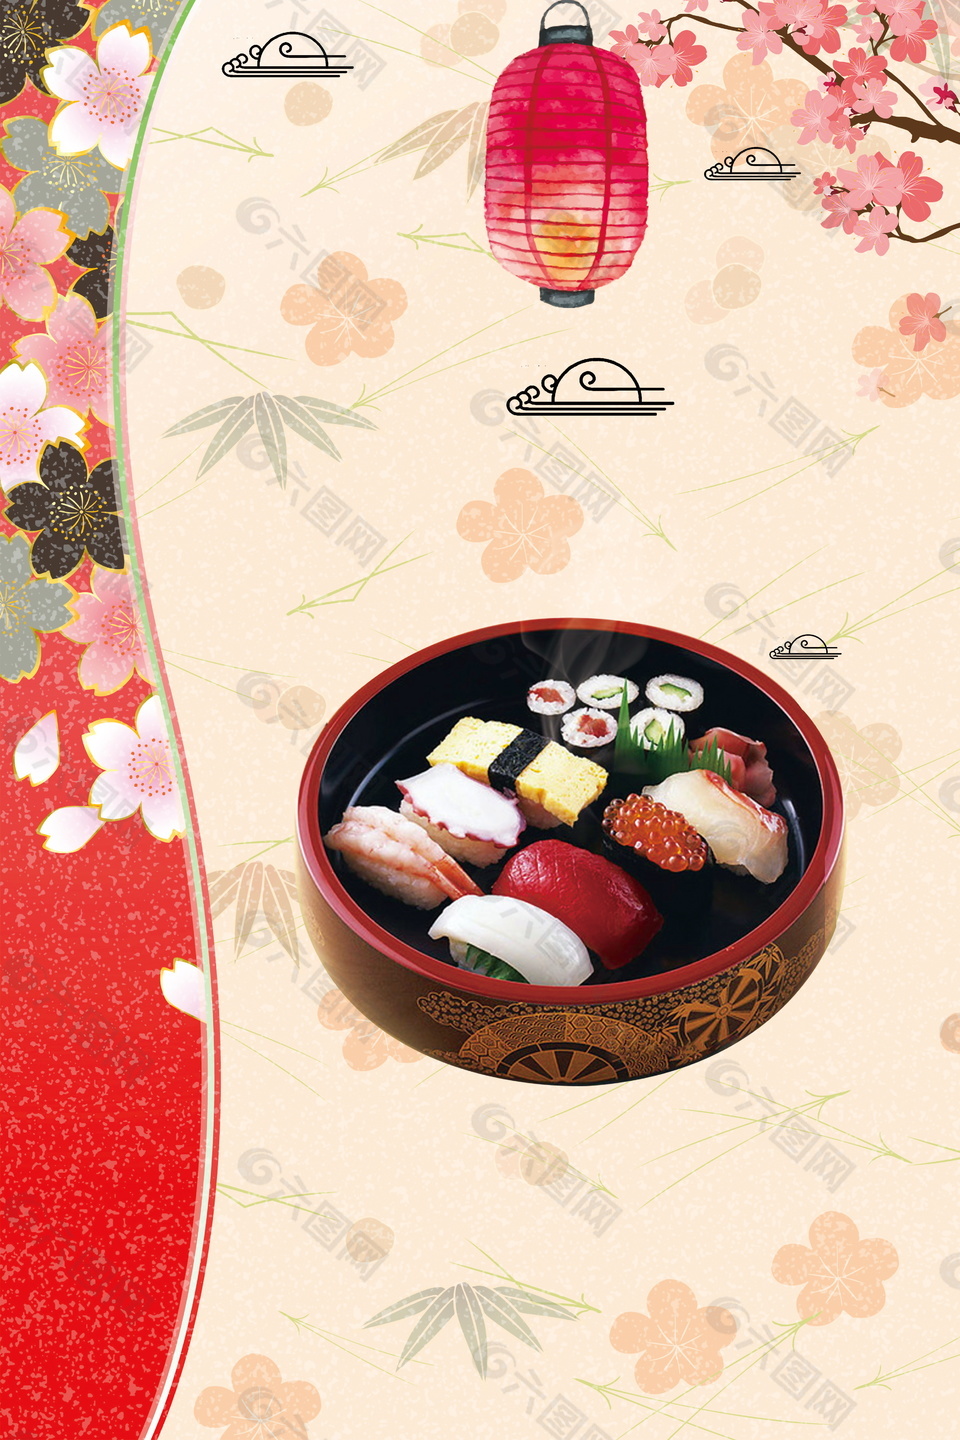 彩绘日式拉面餐饮寿司背景素材